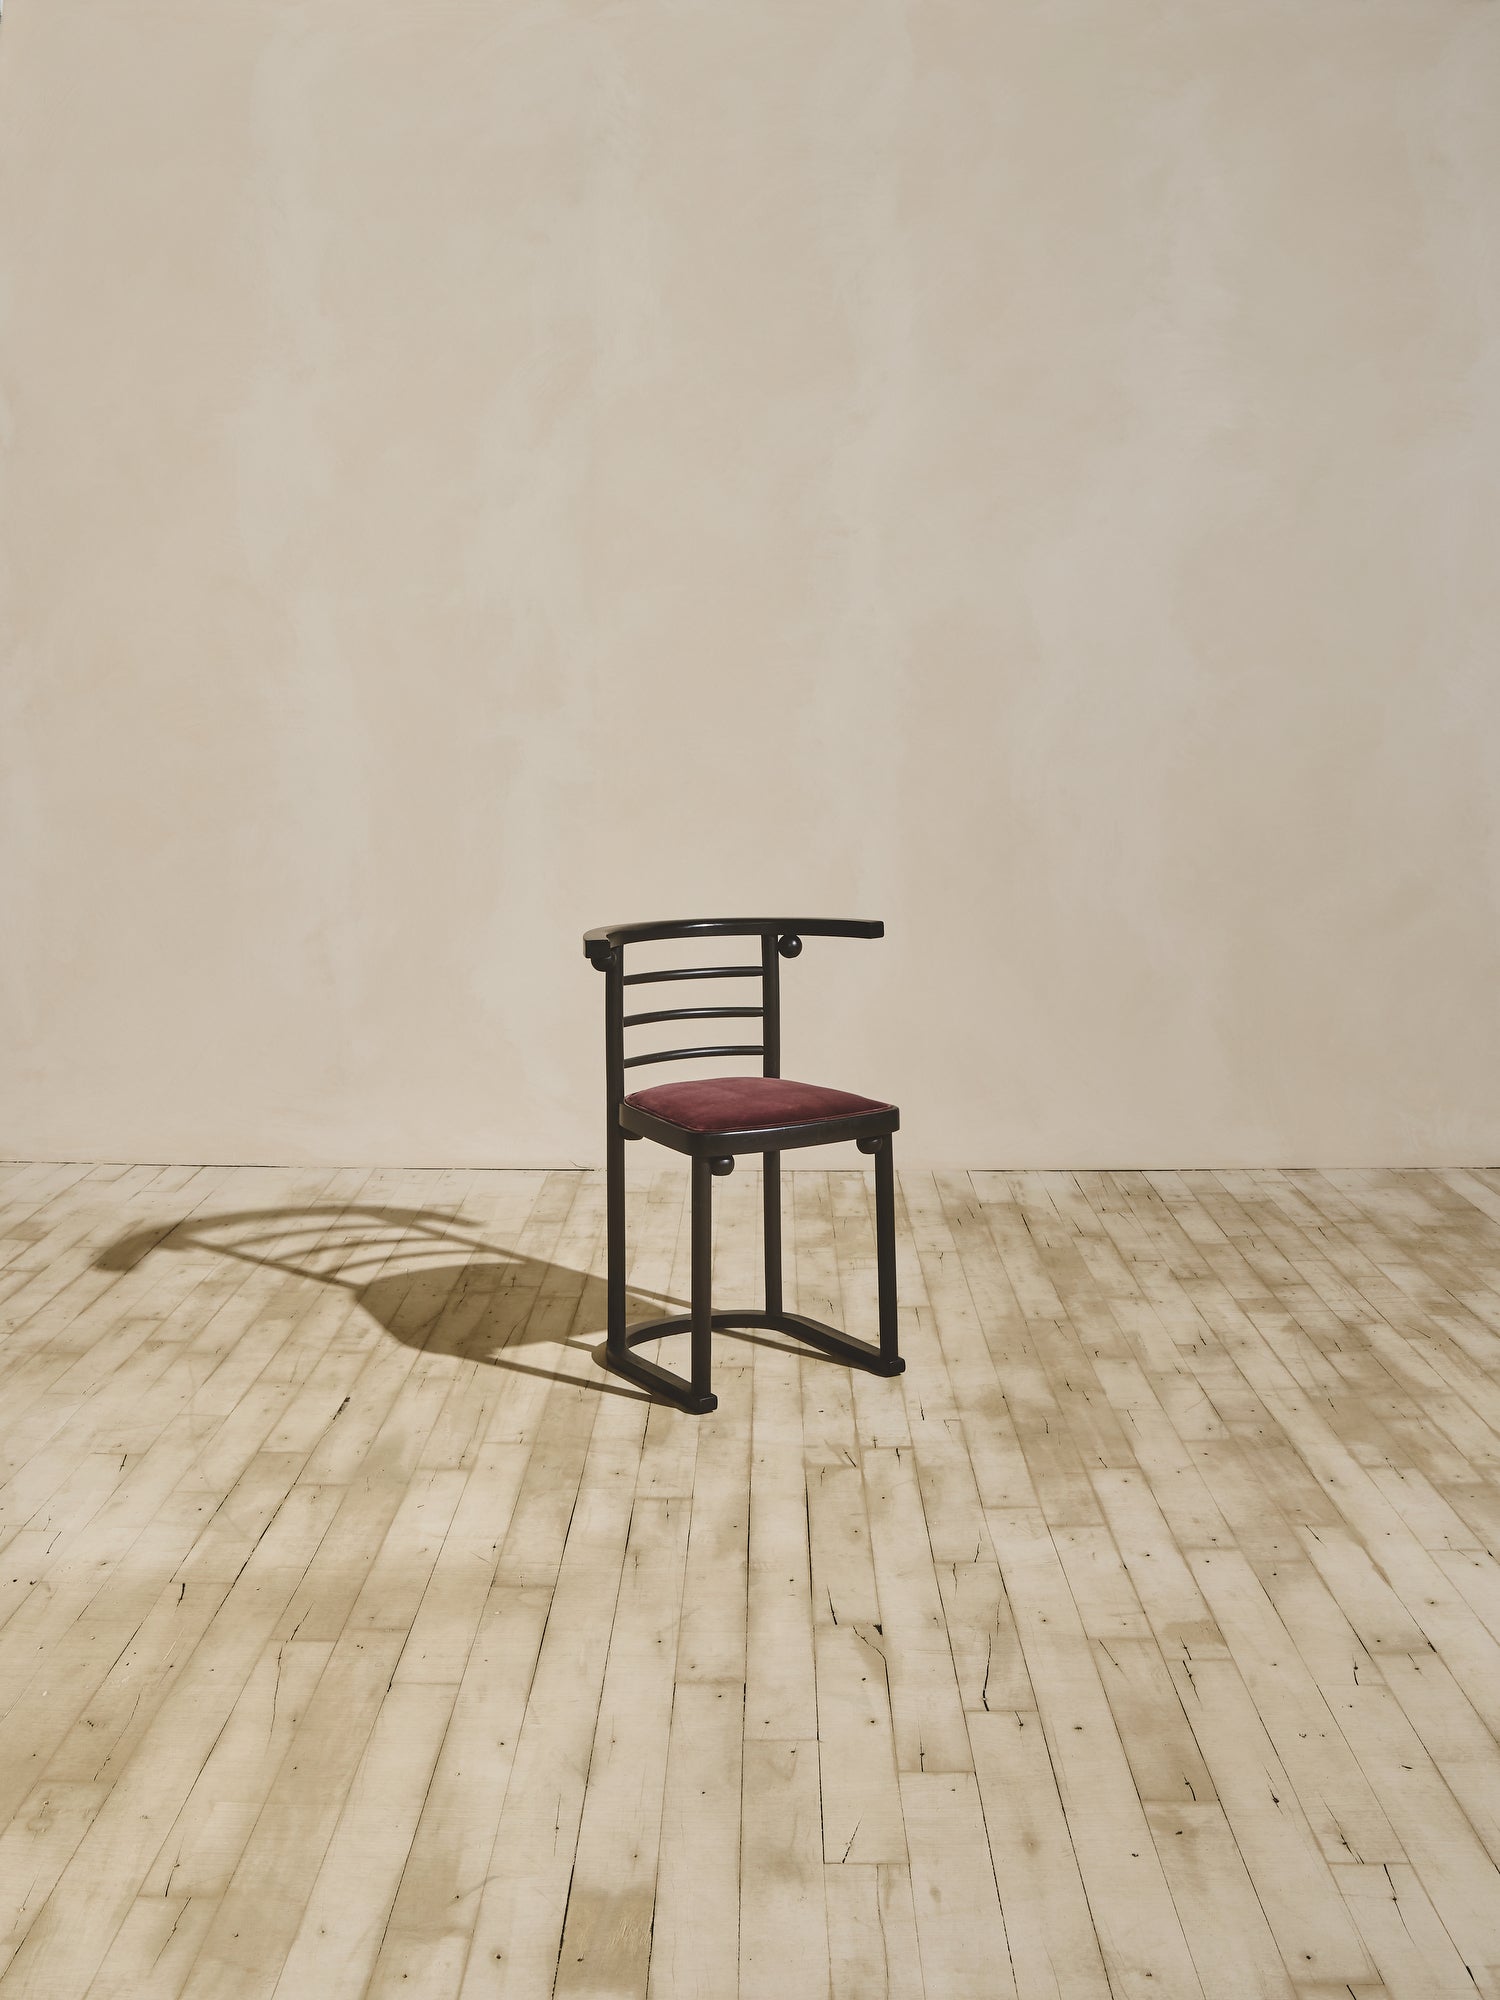 Josef Hoffman Fledermaus Chairs